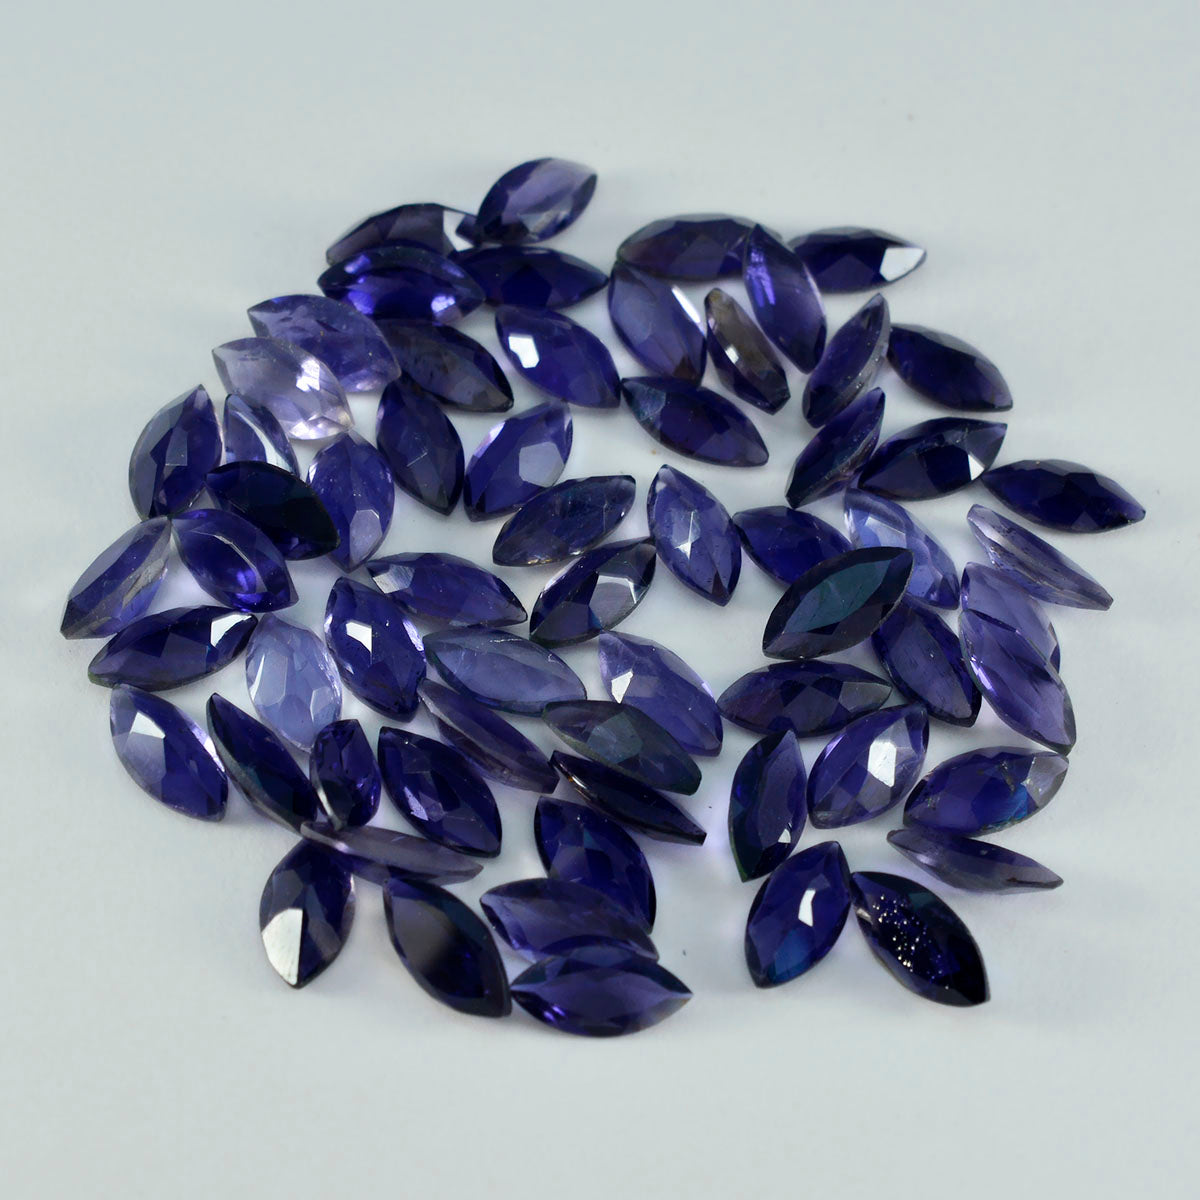 Riyogems 1 pieza de iolita azul facetada de 5x10 mm con forma de marquesa, gemas de gran calidad